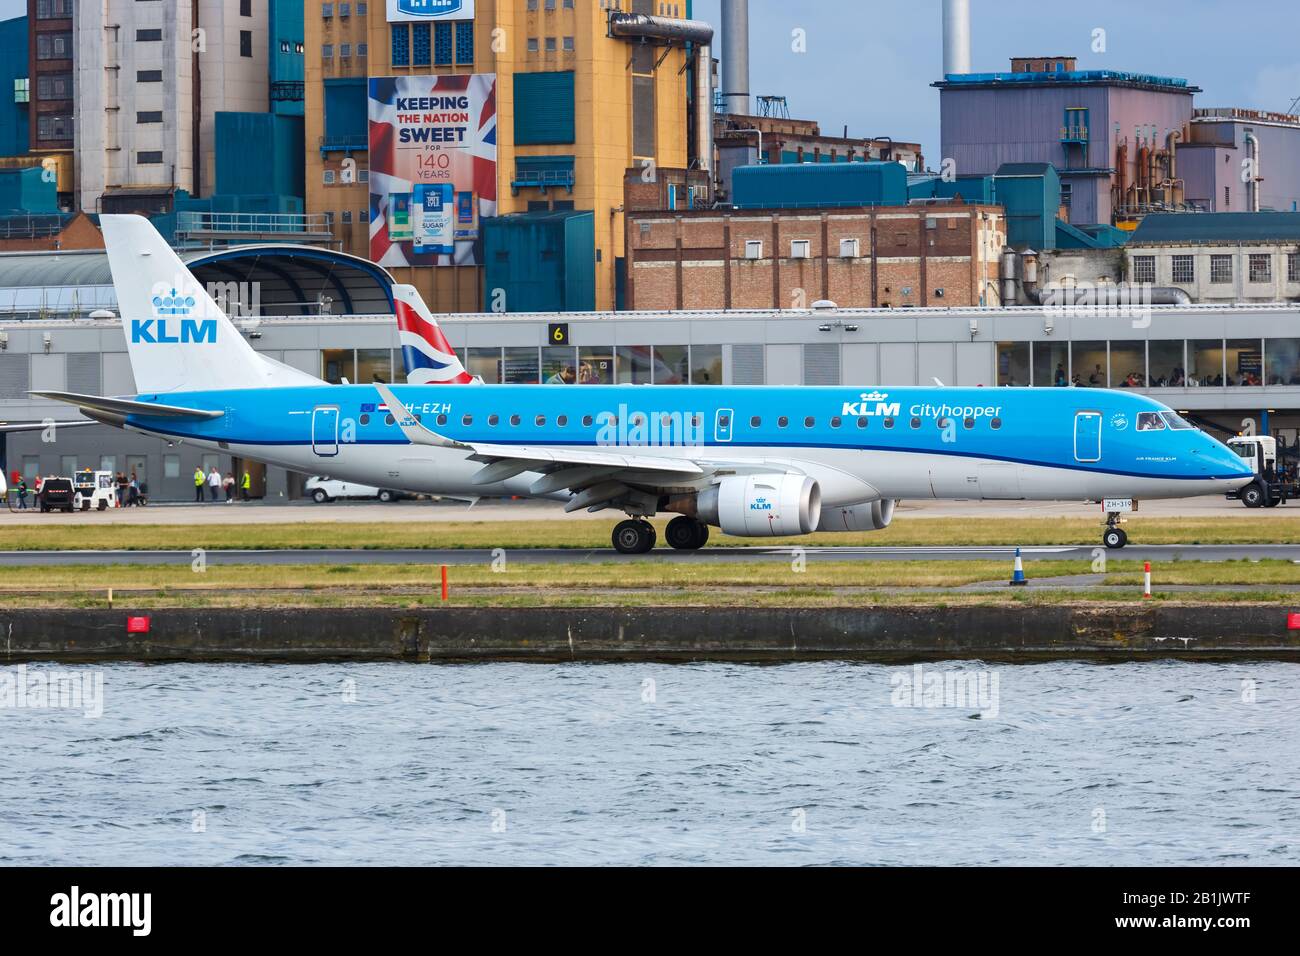 Londres, Royaume-Uni – 7 juillet 2019 : avion KLM cityhopper Embraer 190 à l'aéroport de Londres City (LCY) au Royaume-Uni. Banque D'Images